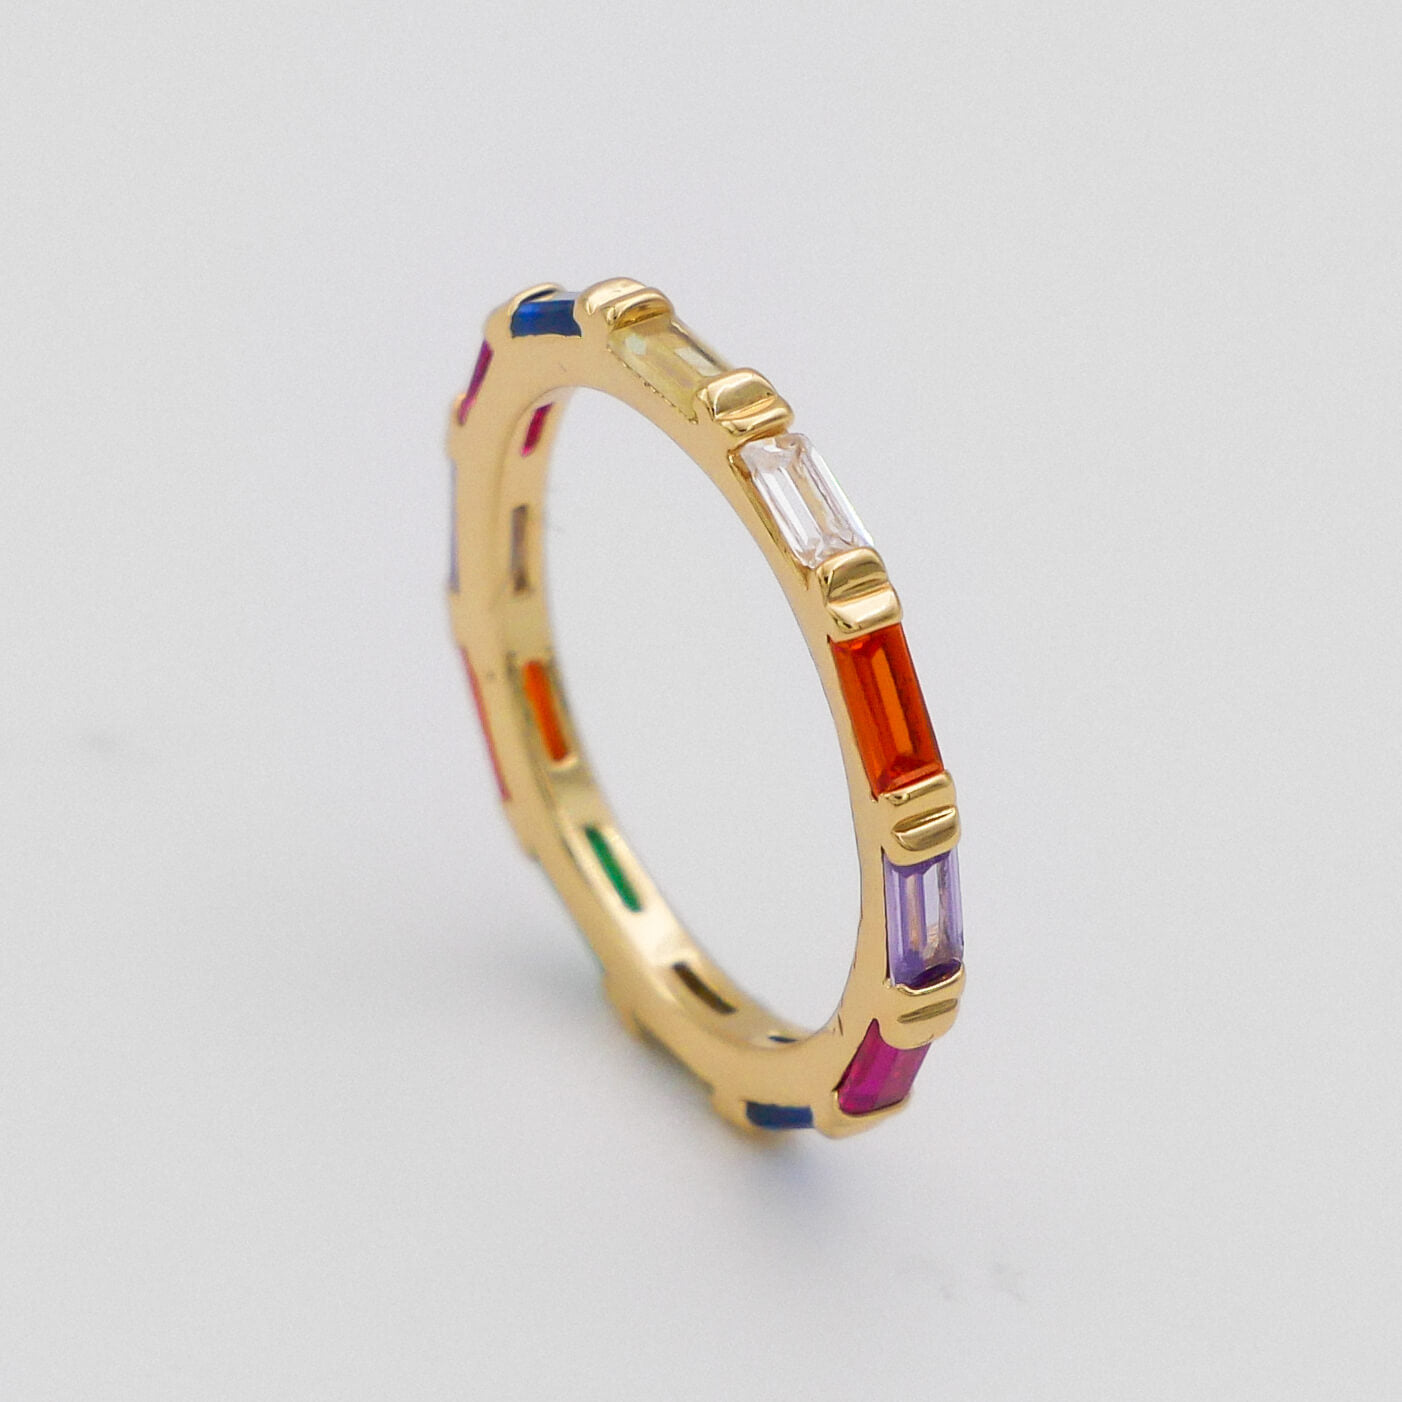 Elsie Rainbow Ring